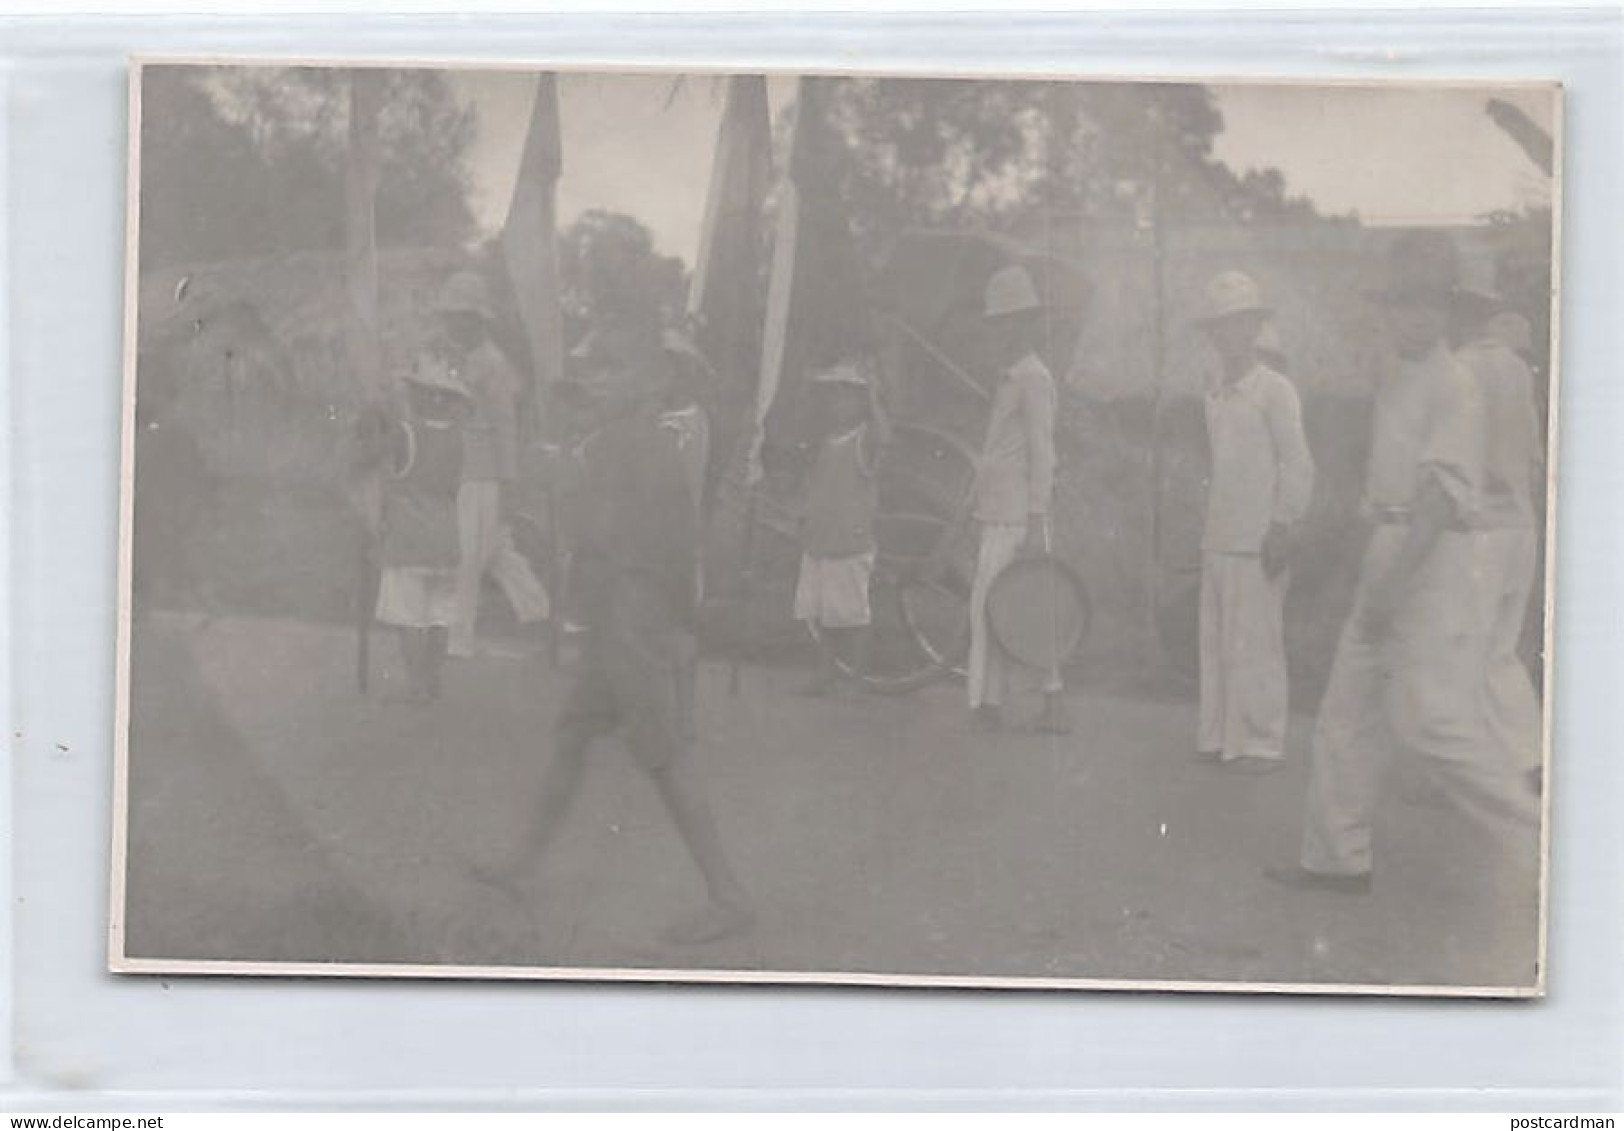 Vietnam - SAIGON - Préparation D'une Procession - CARTE PHOTO Années 20 - Ed. D. Capra Giuseppe, Prêtre Salésien Italien - Vietnam